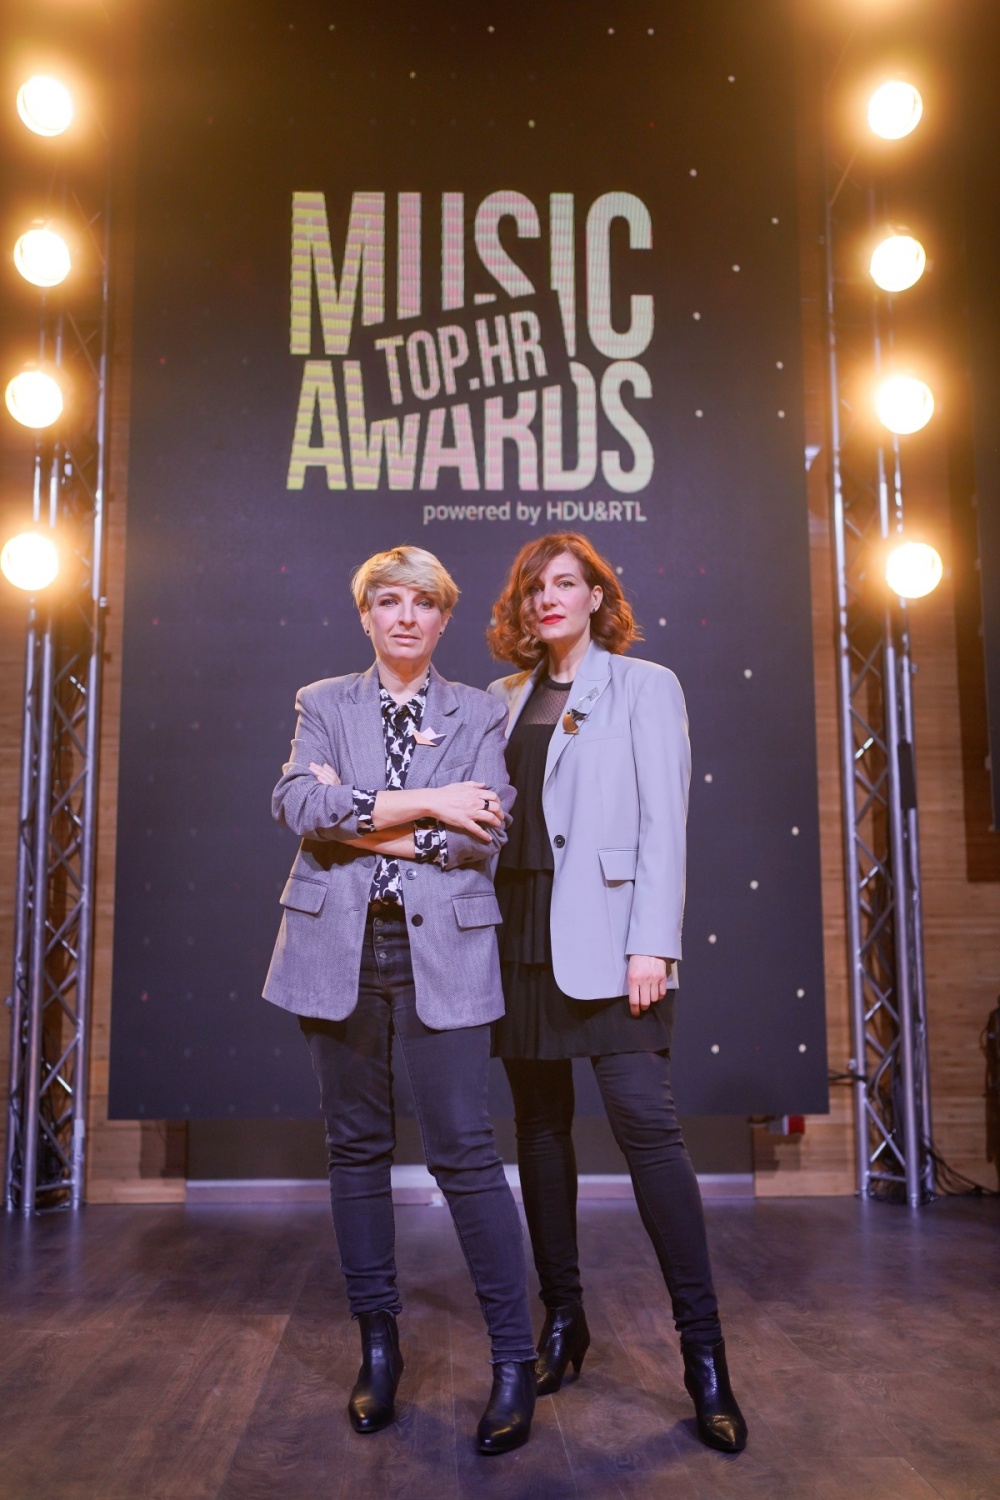 Treća dodjela Top.HR Music Awardsa u znaku žena koje su obilježile hrvatsku diskografiju